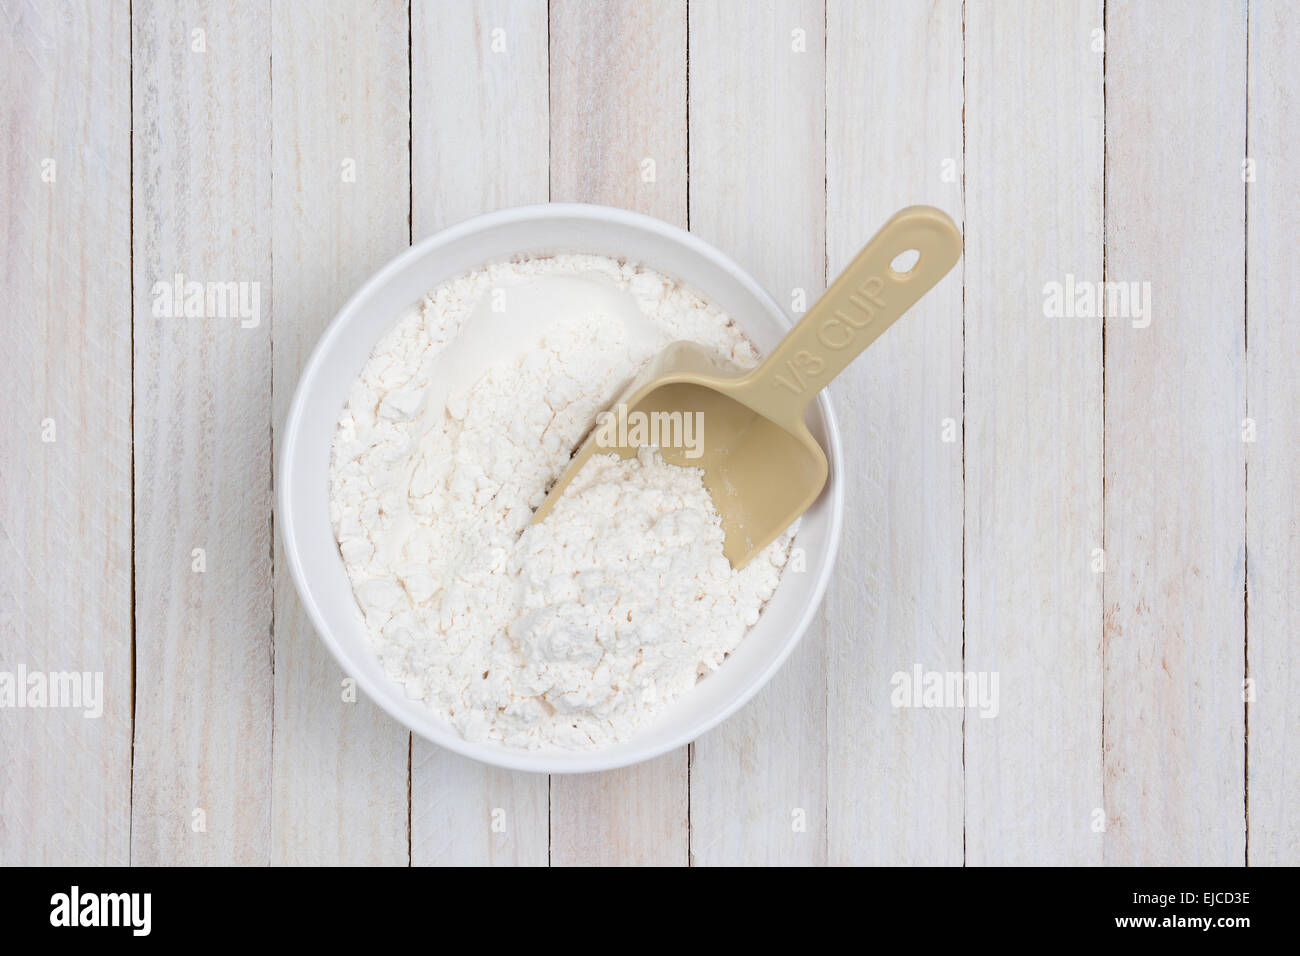 Imagen aérea de un tazón de harina sobre una mesa de cocina rústica de madera blanca. Una cuchara de plástico está atascada en la harina. Foto de stock